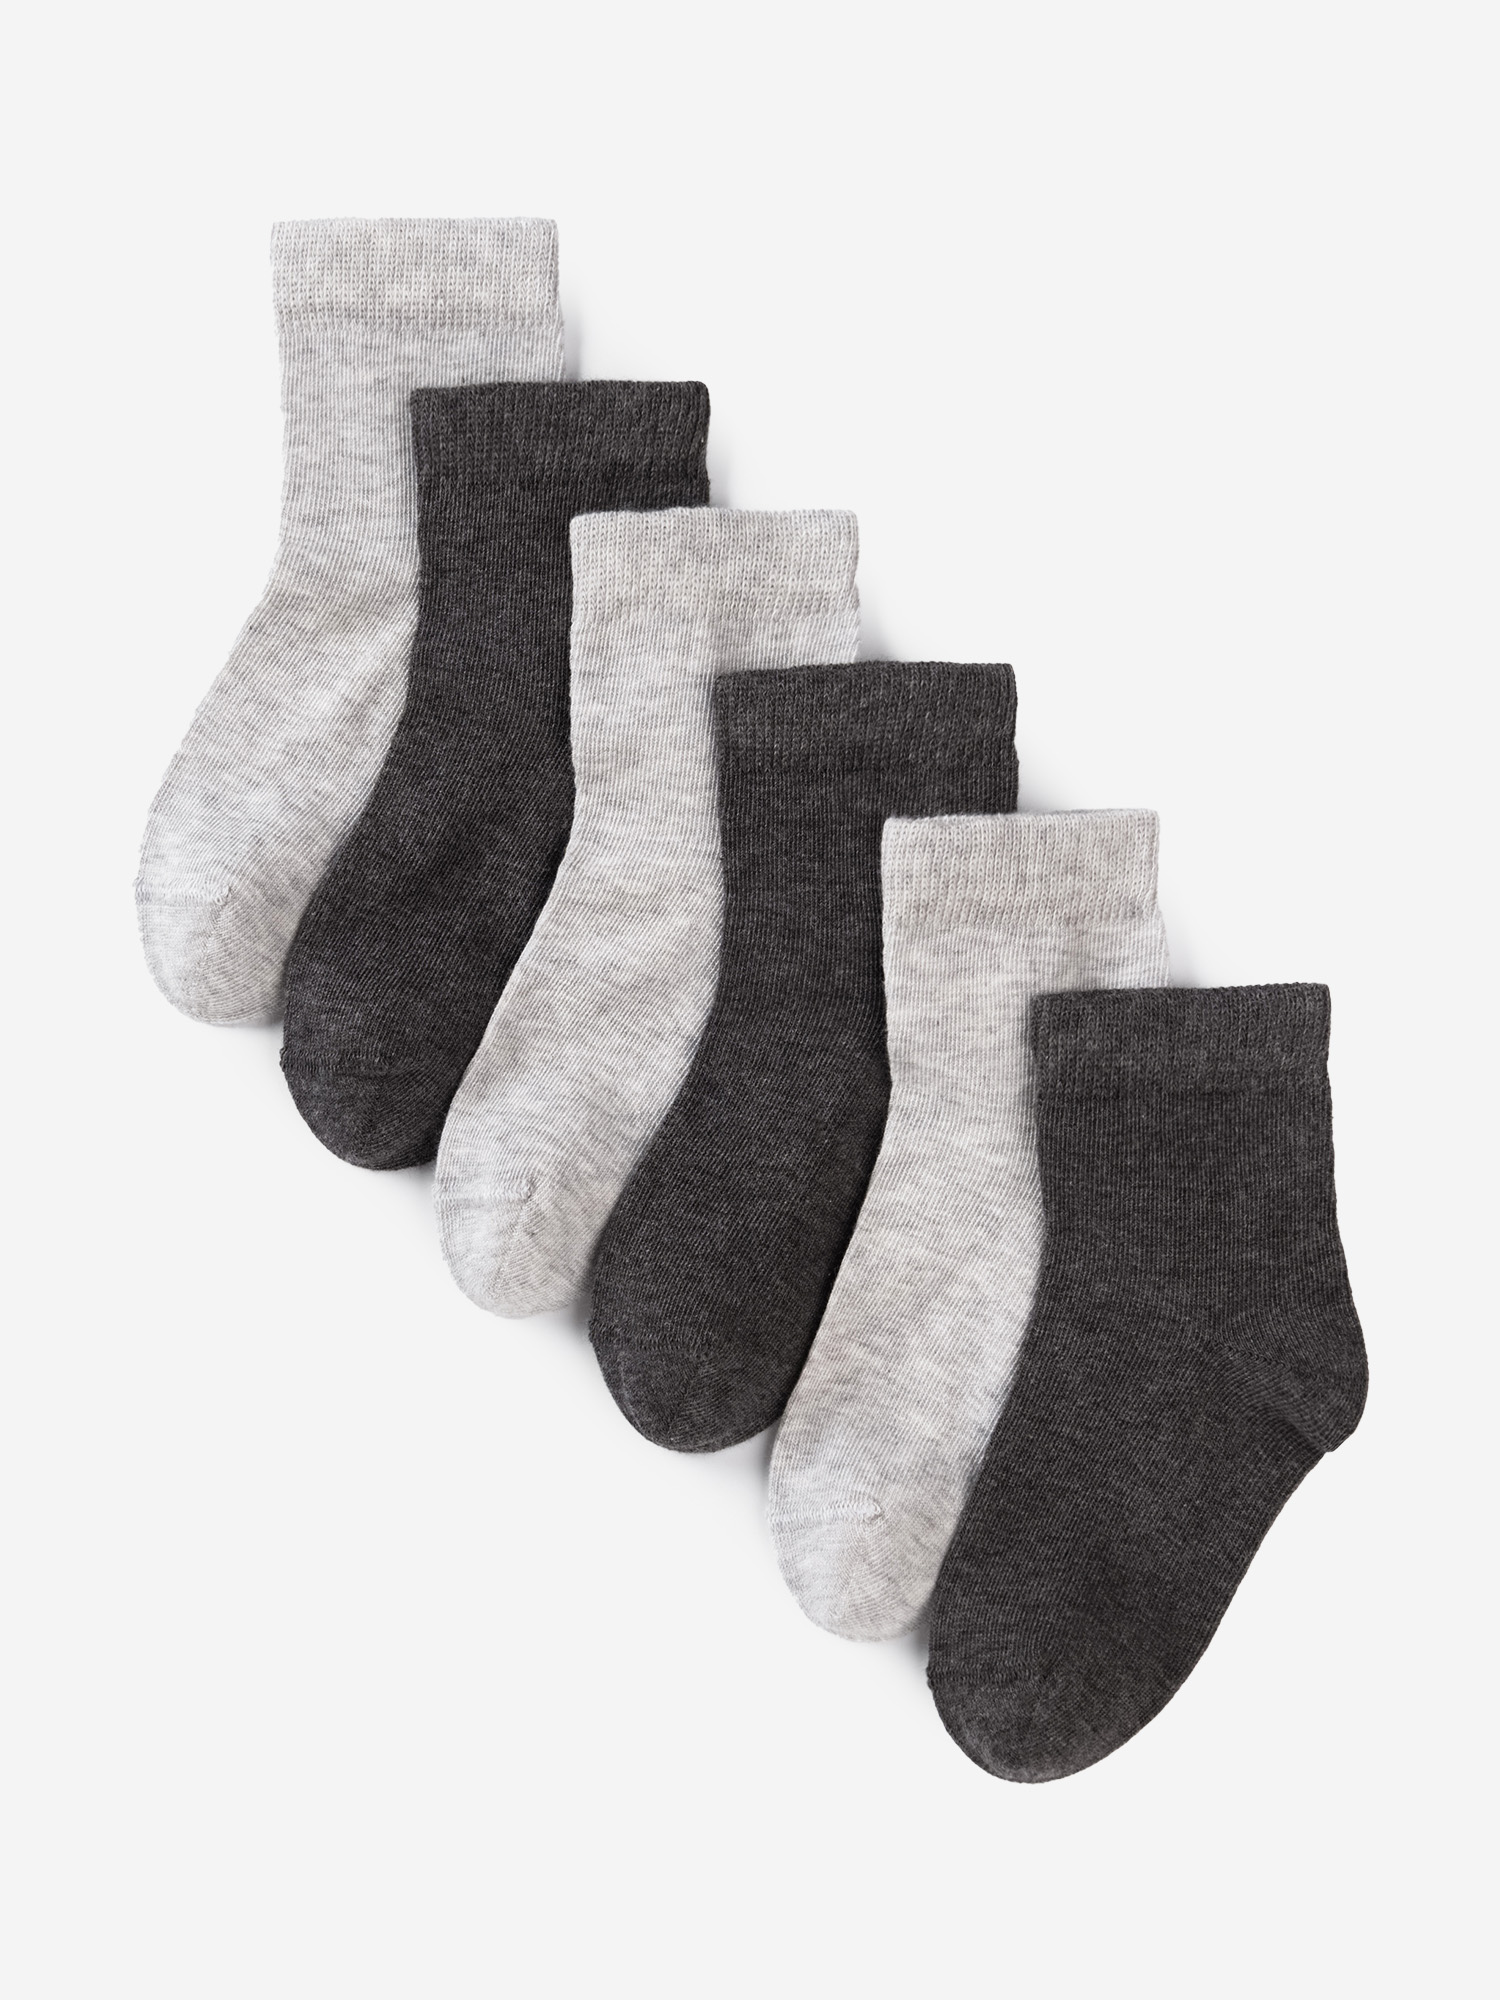 Носки для детей малышей хлопок набор 6 пары Artie, Серый носки для детей малышей хлопок набор 5 пары artie синий